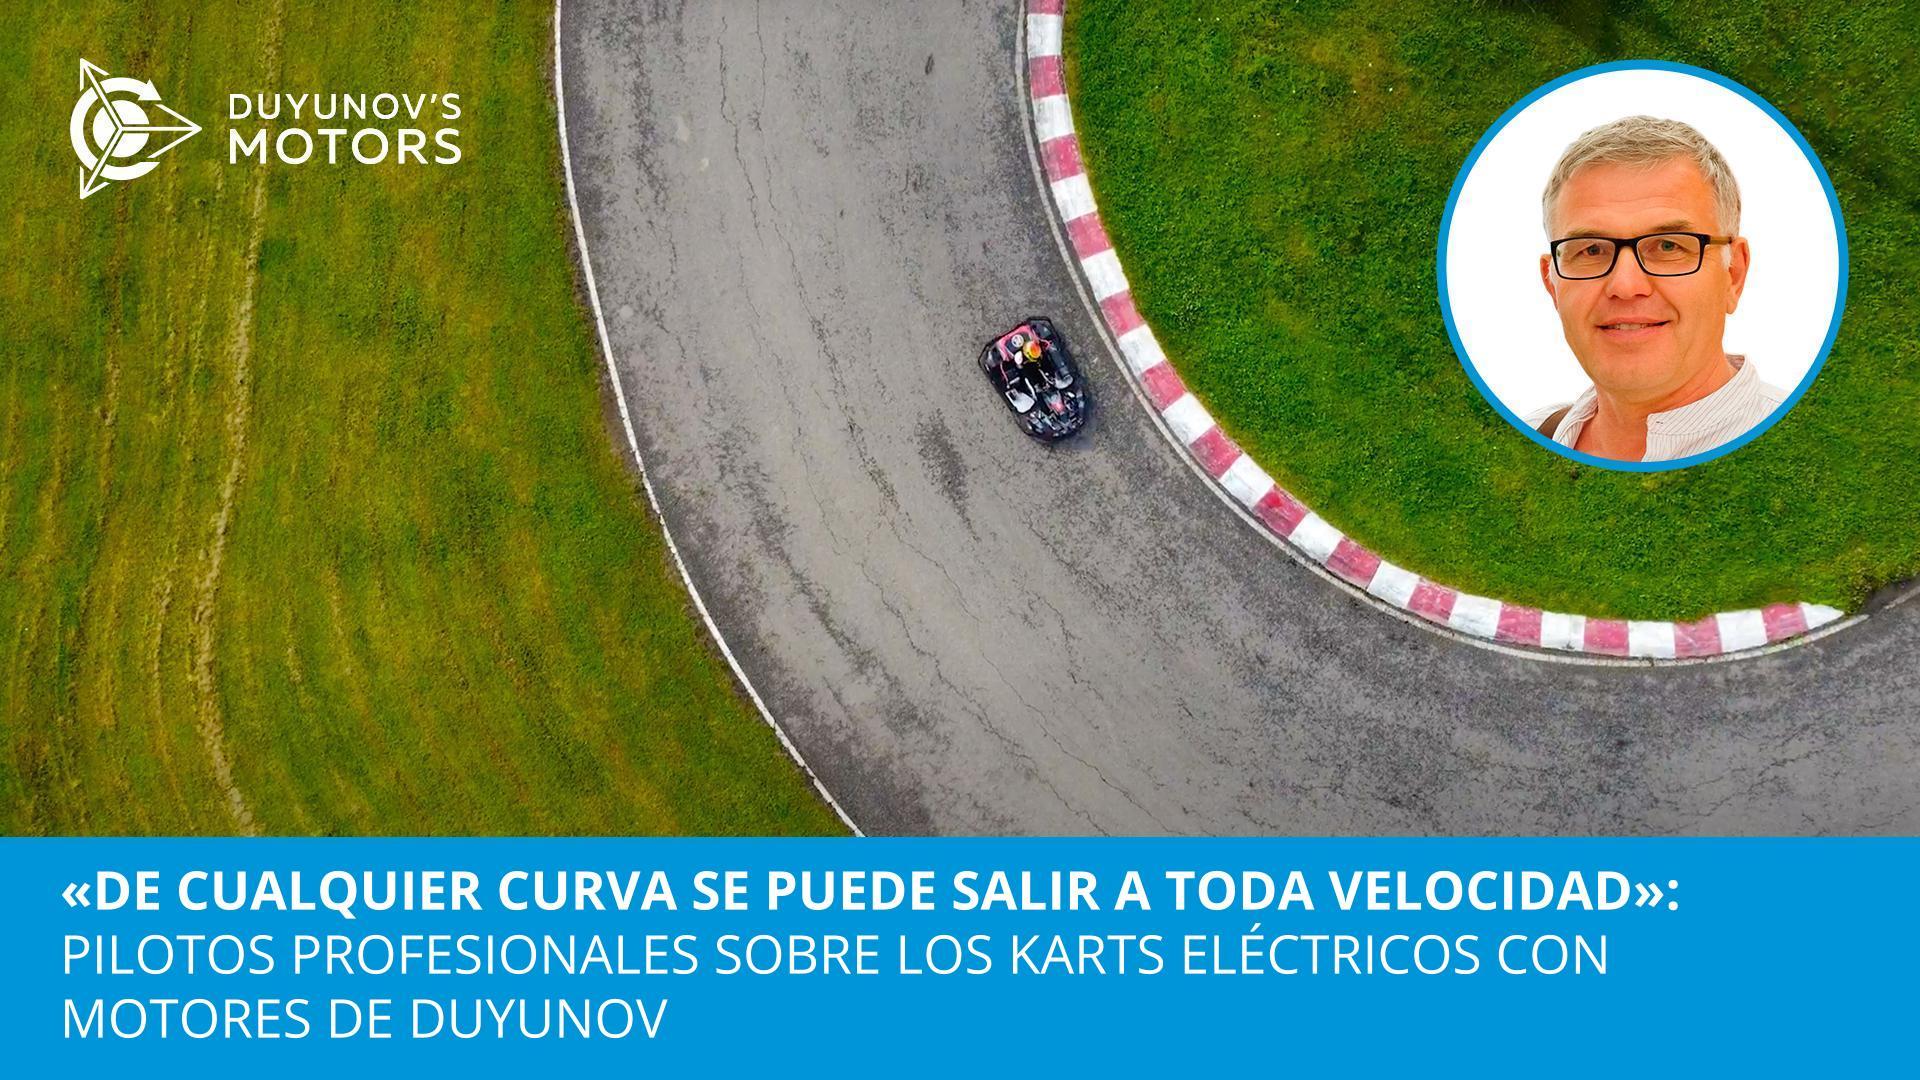 "De cualquier curva se puede salir a toda velocidad": pilotos profesionales sobre los karts eléctricos con motores de Duyunov